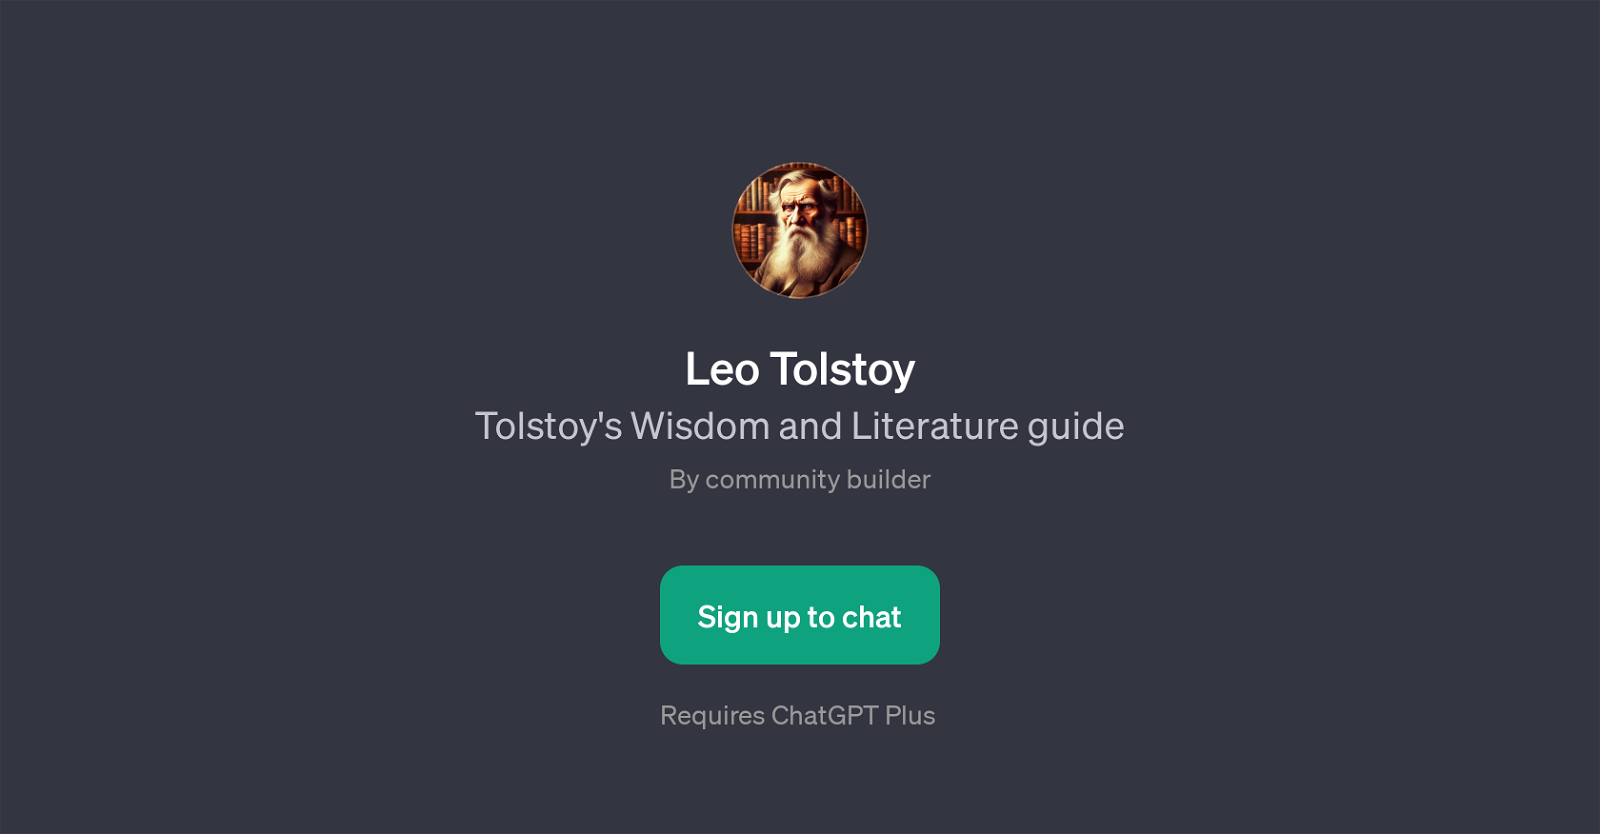 Leo Tolstoy website